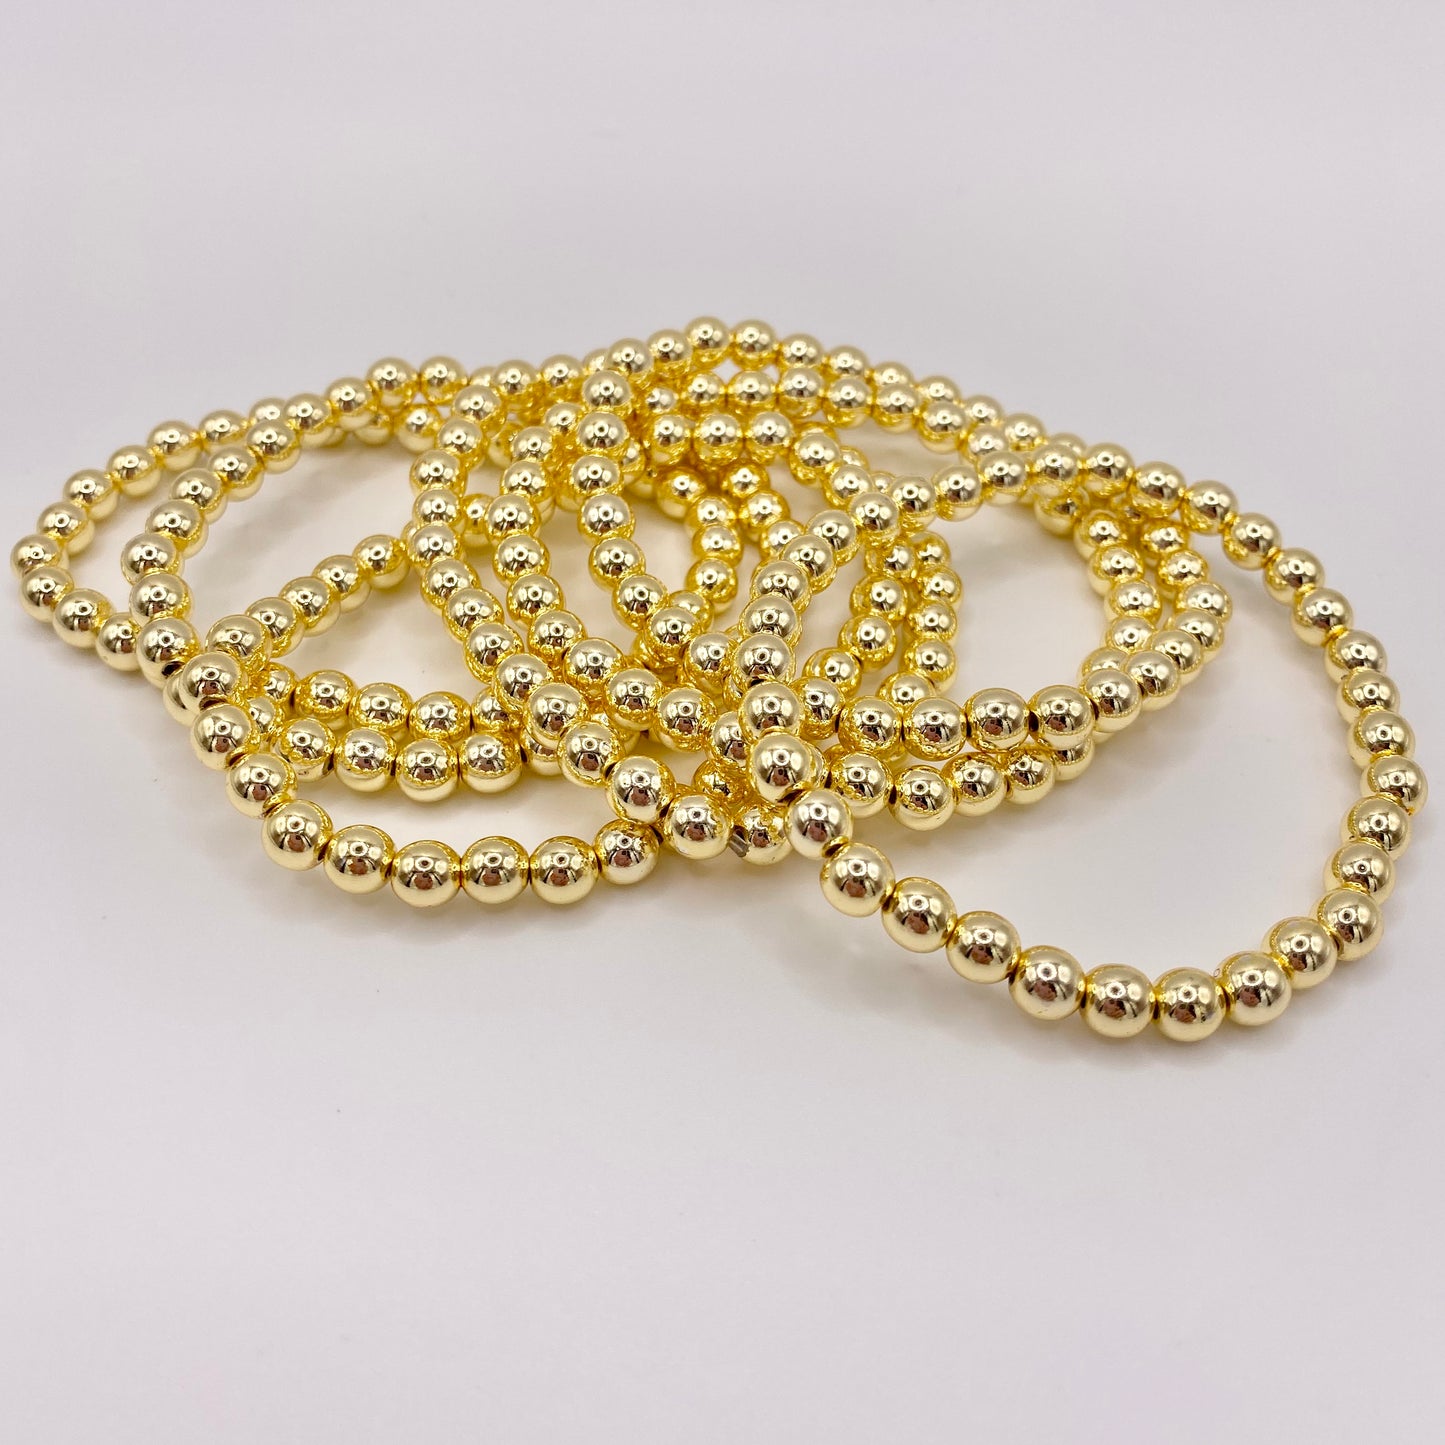 Beaded 14K Gold Hematite Bracelet